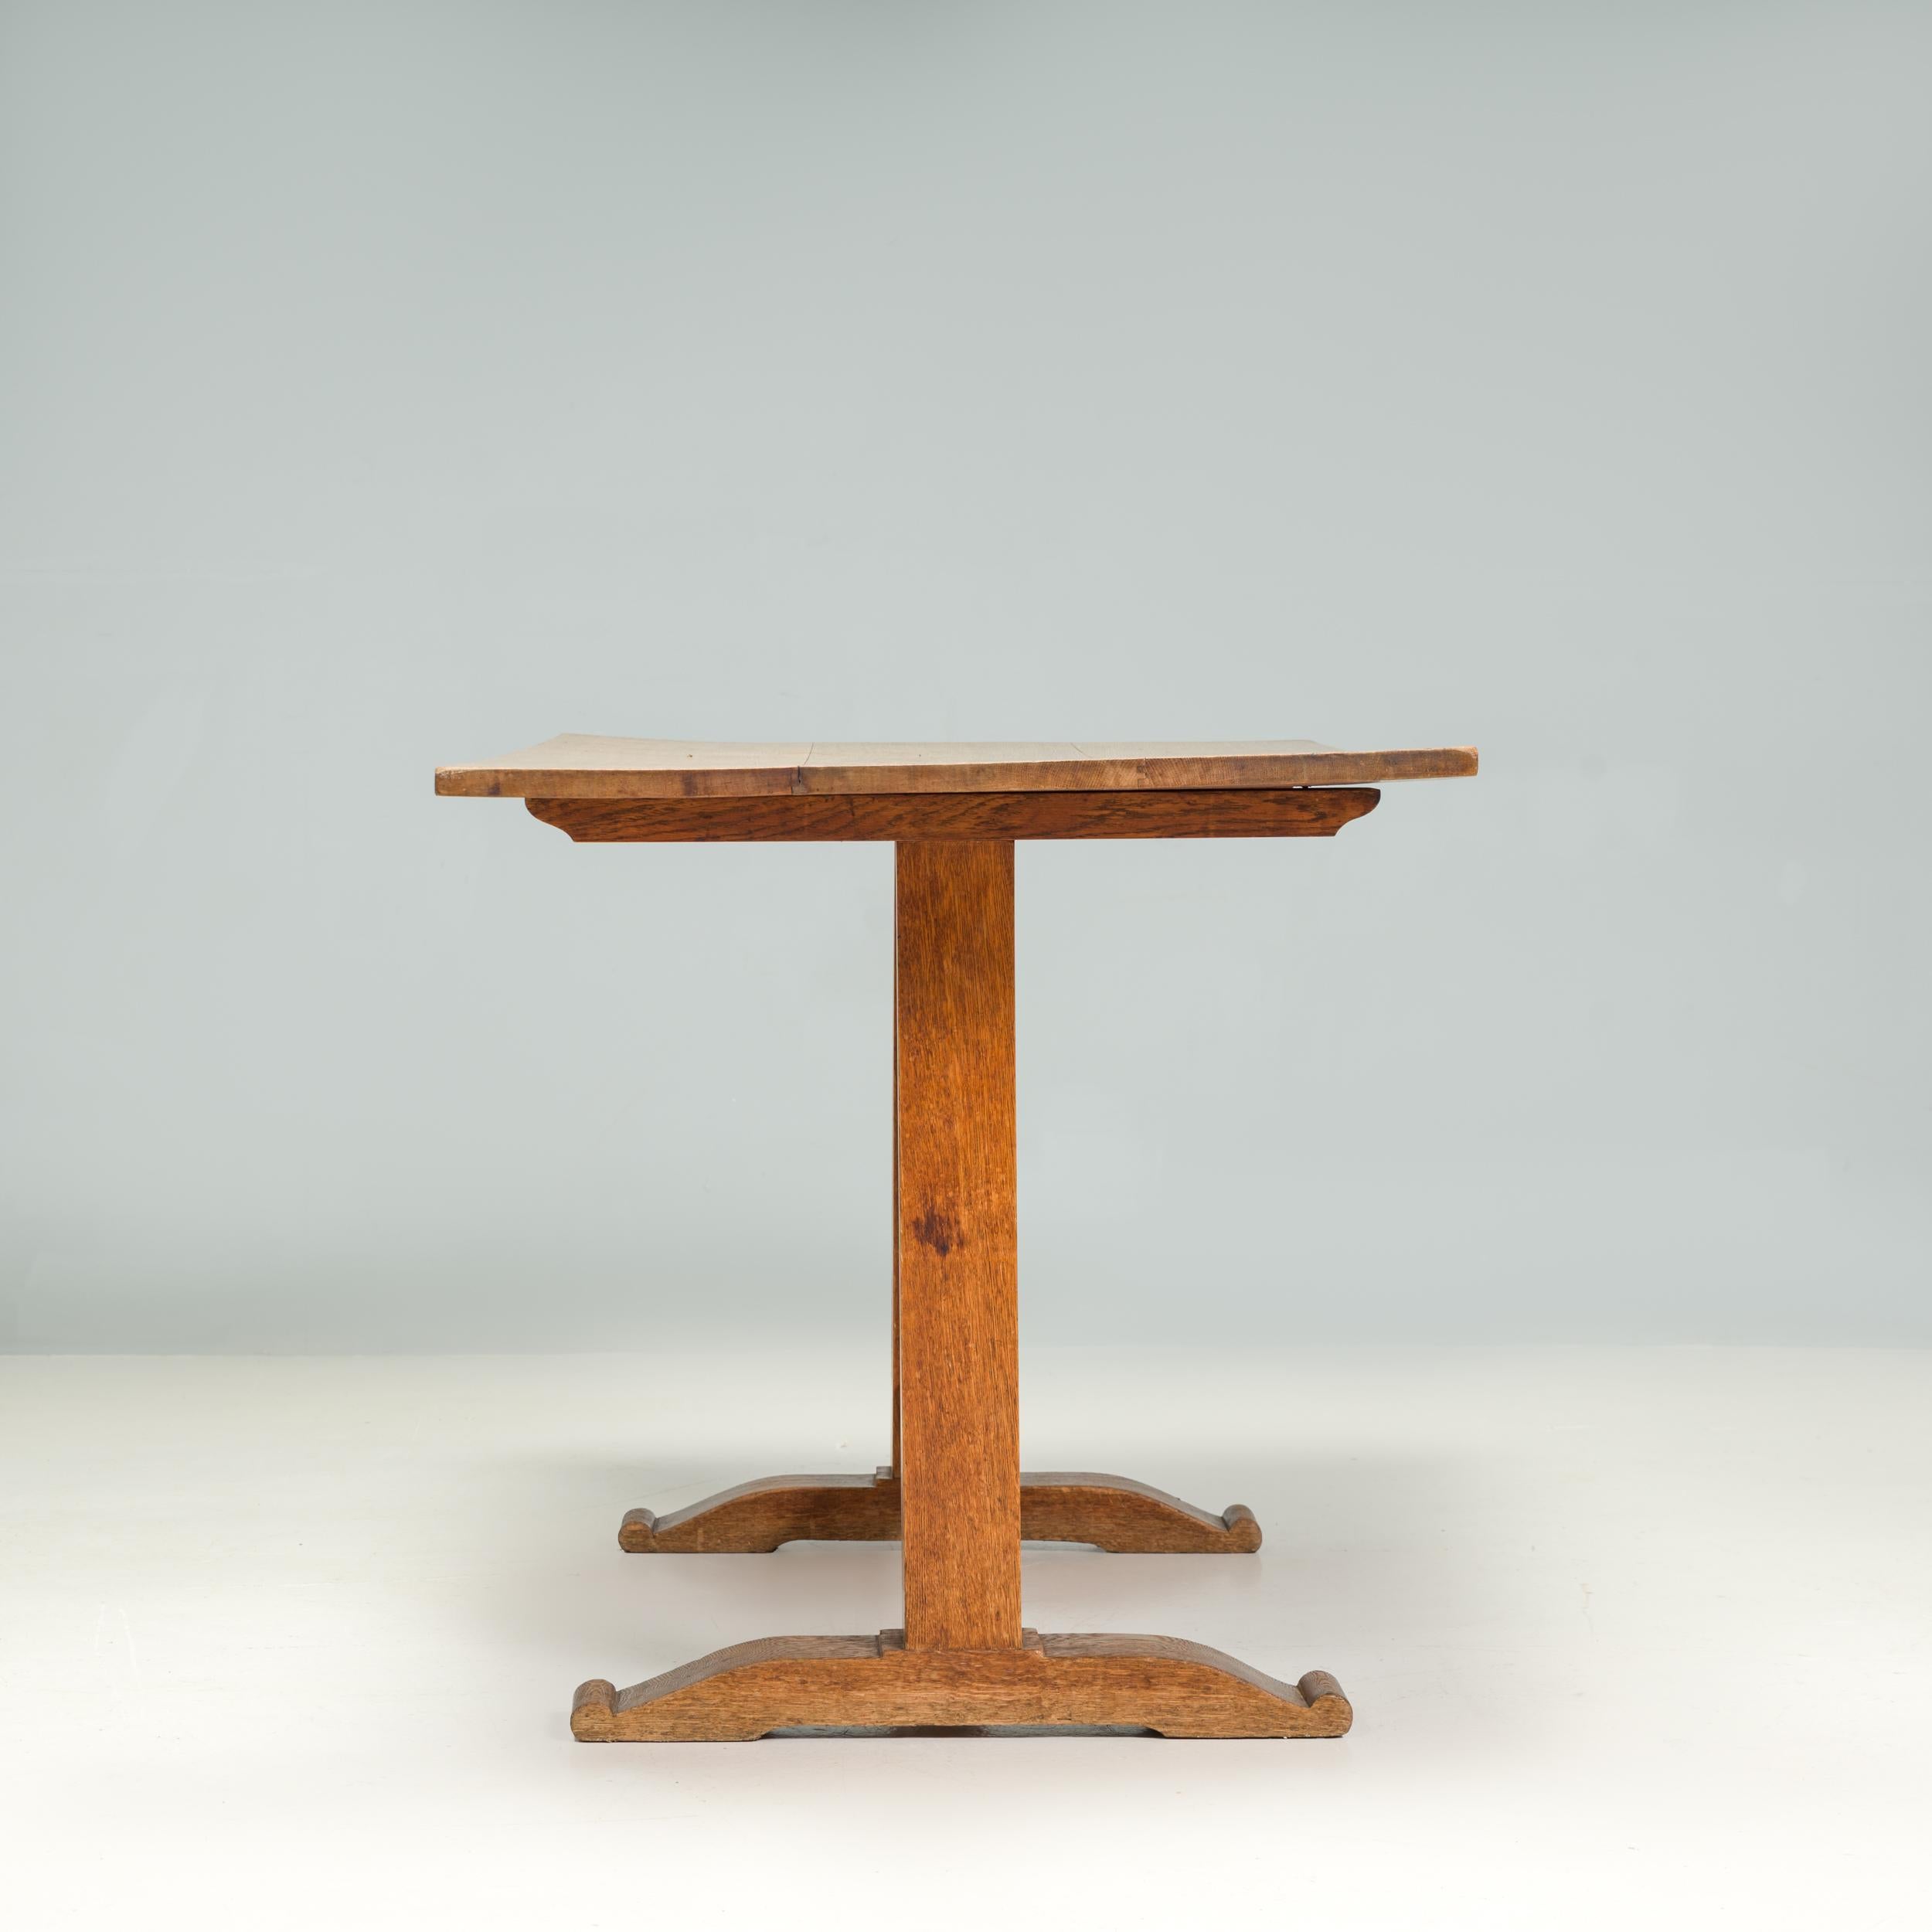 Una mesa de refectorio de madera bellamente construida en estilo Arts & Crafts.

La mesa tiene una estética tradicional, con un tablero rectangular maravillosamente desgastado formado por varias tablas de madera.

Las patas de estilo zócalo tienen